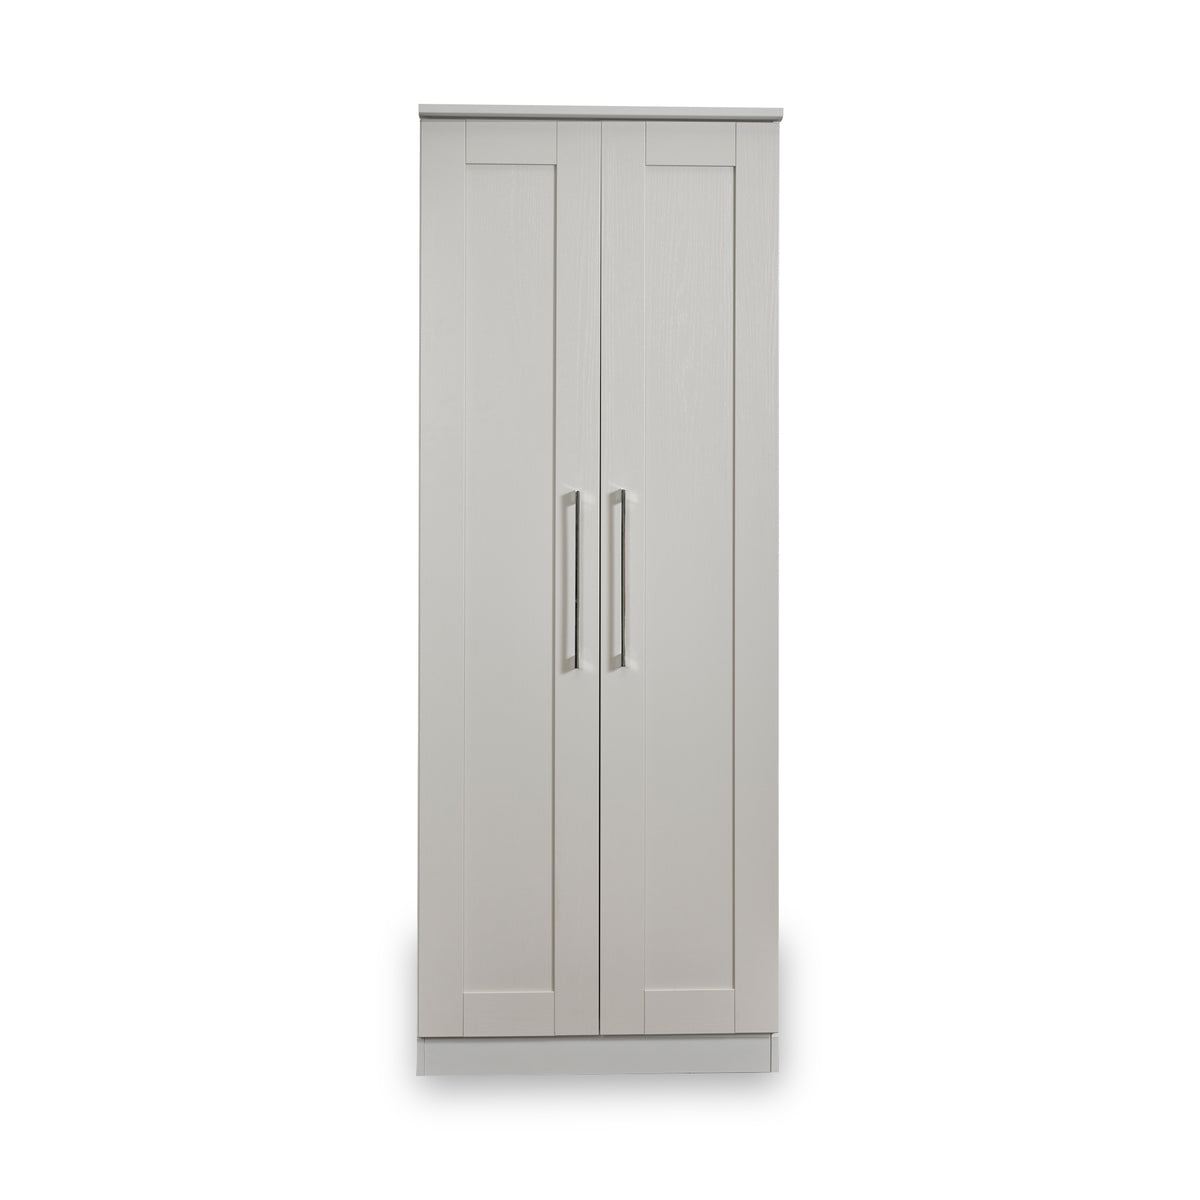 Bellamy Grey 2 Door Wardrobe by Roseland